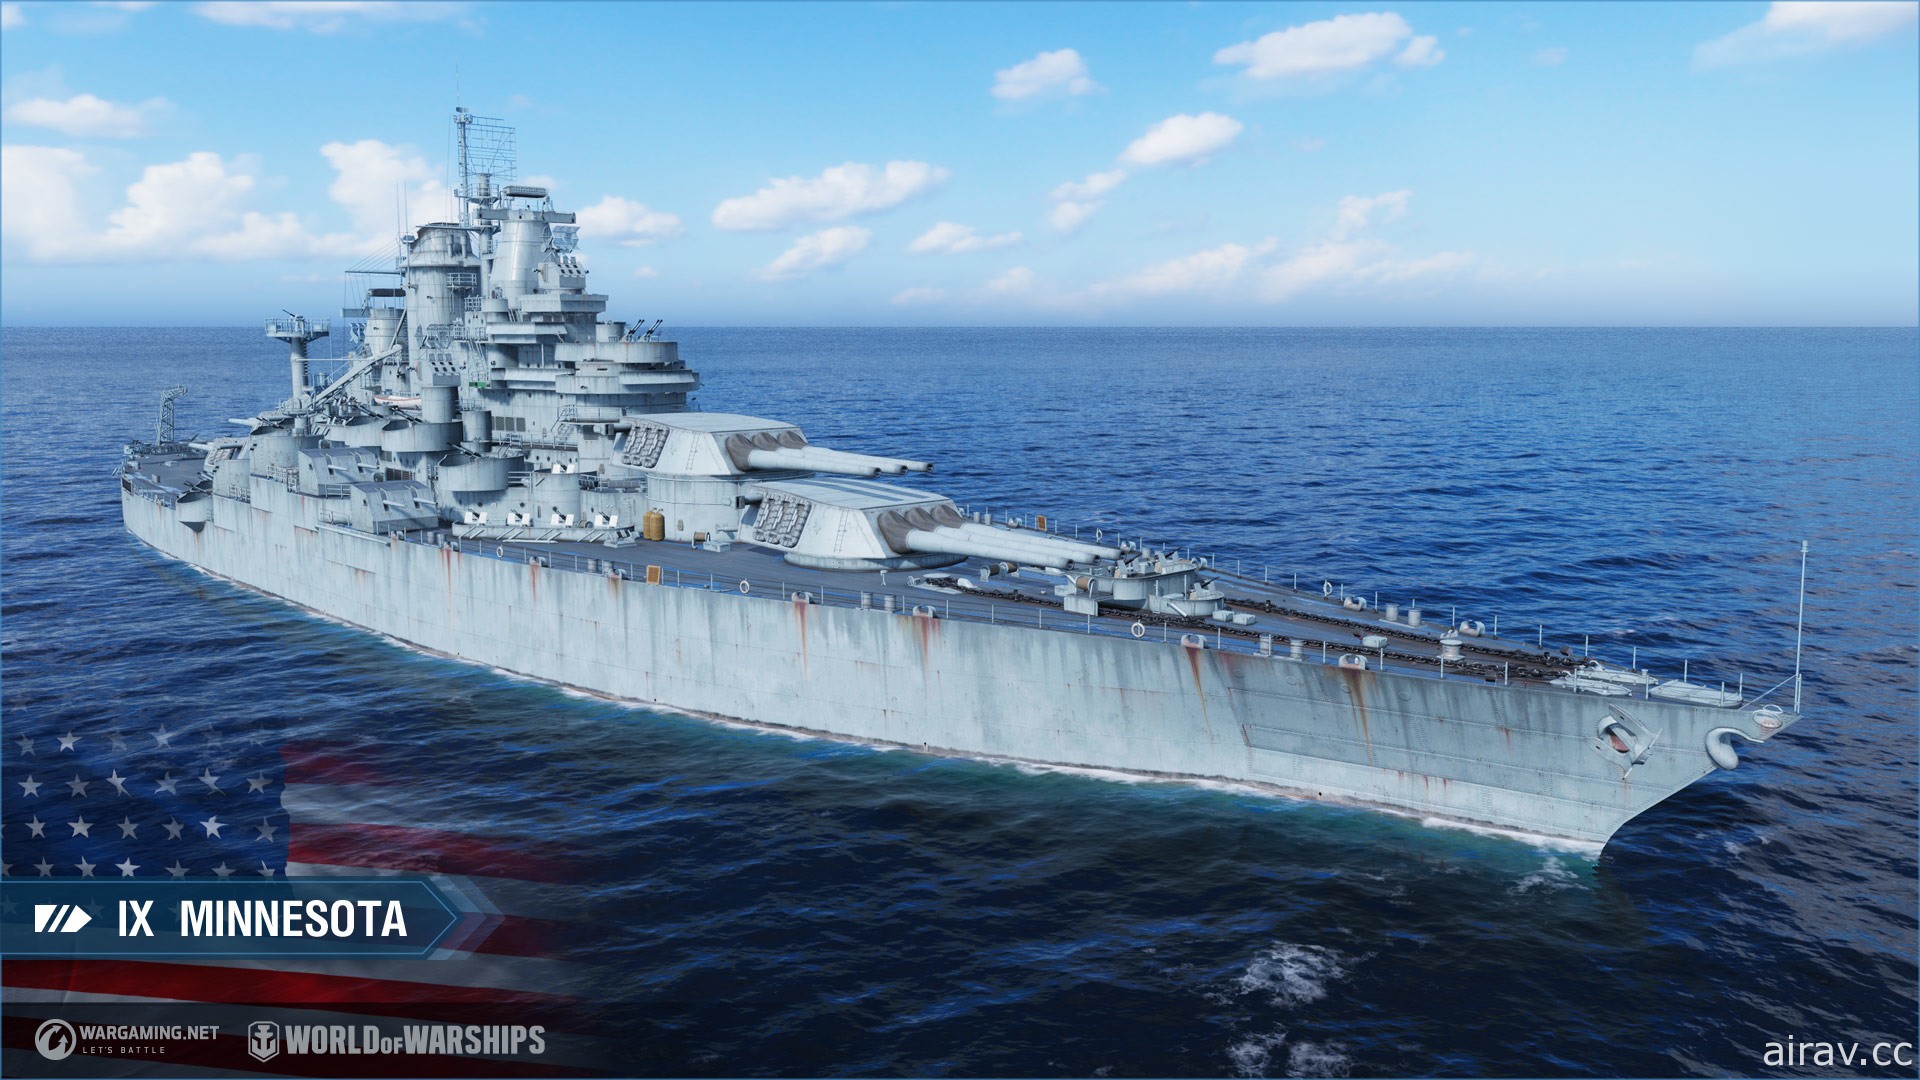 《戰艦世界》12 月將陸續推出兩個版本更新 主題內容與玩家迎接 2021 年